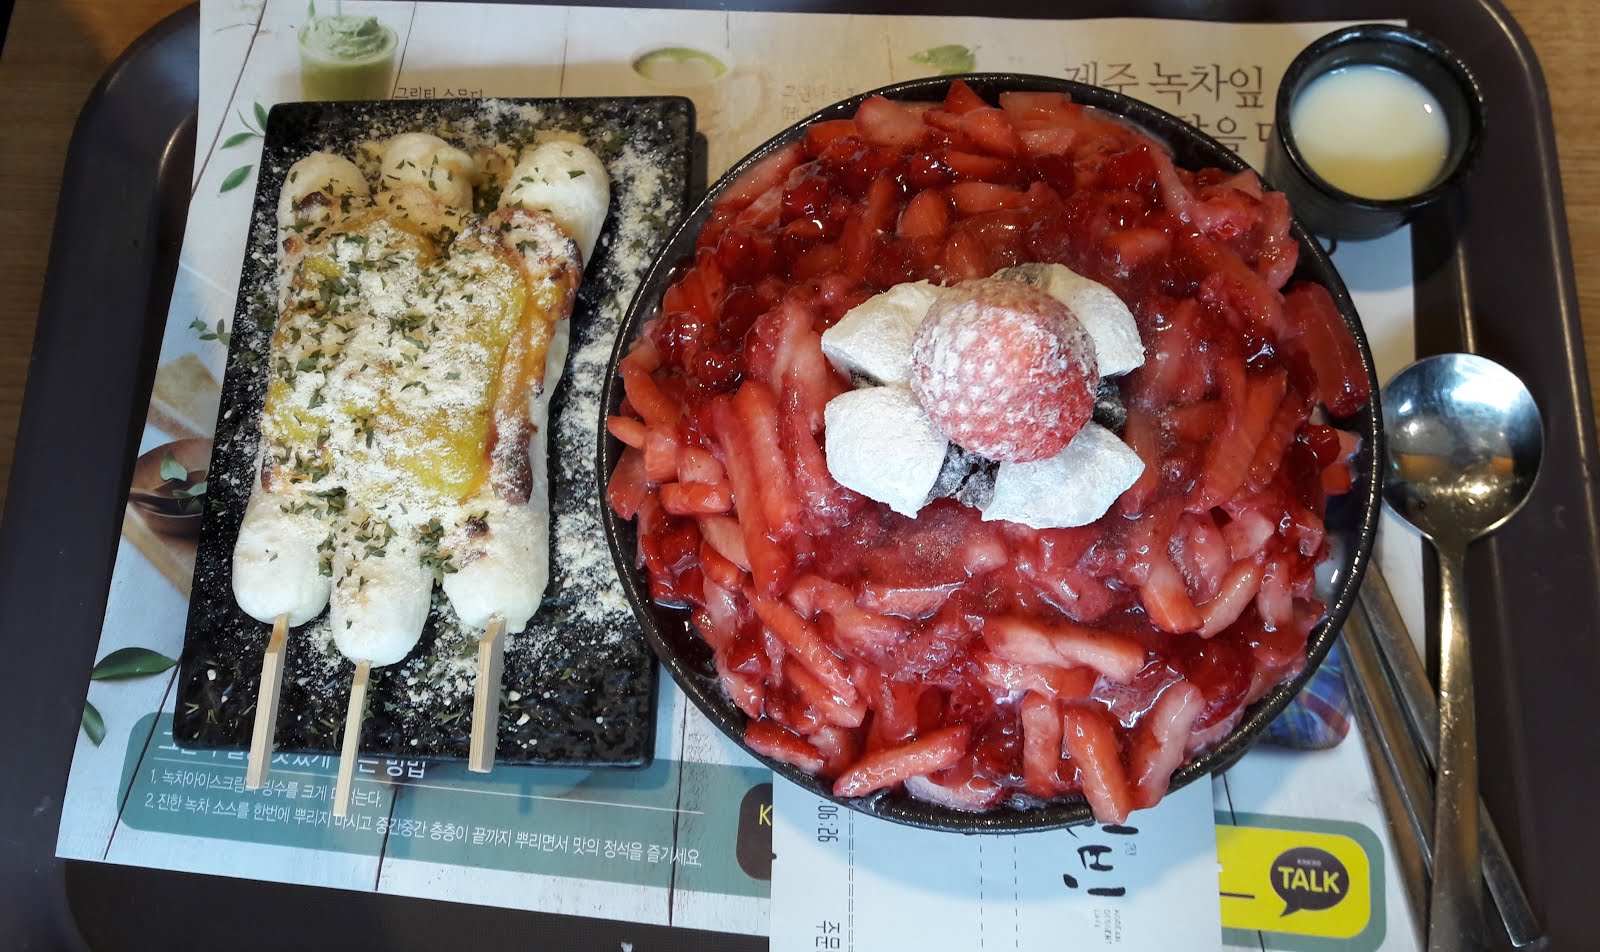 Korean Dessert Cafe "Sulbing"